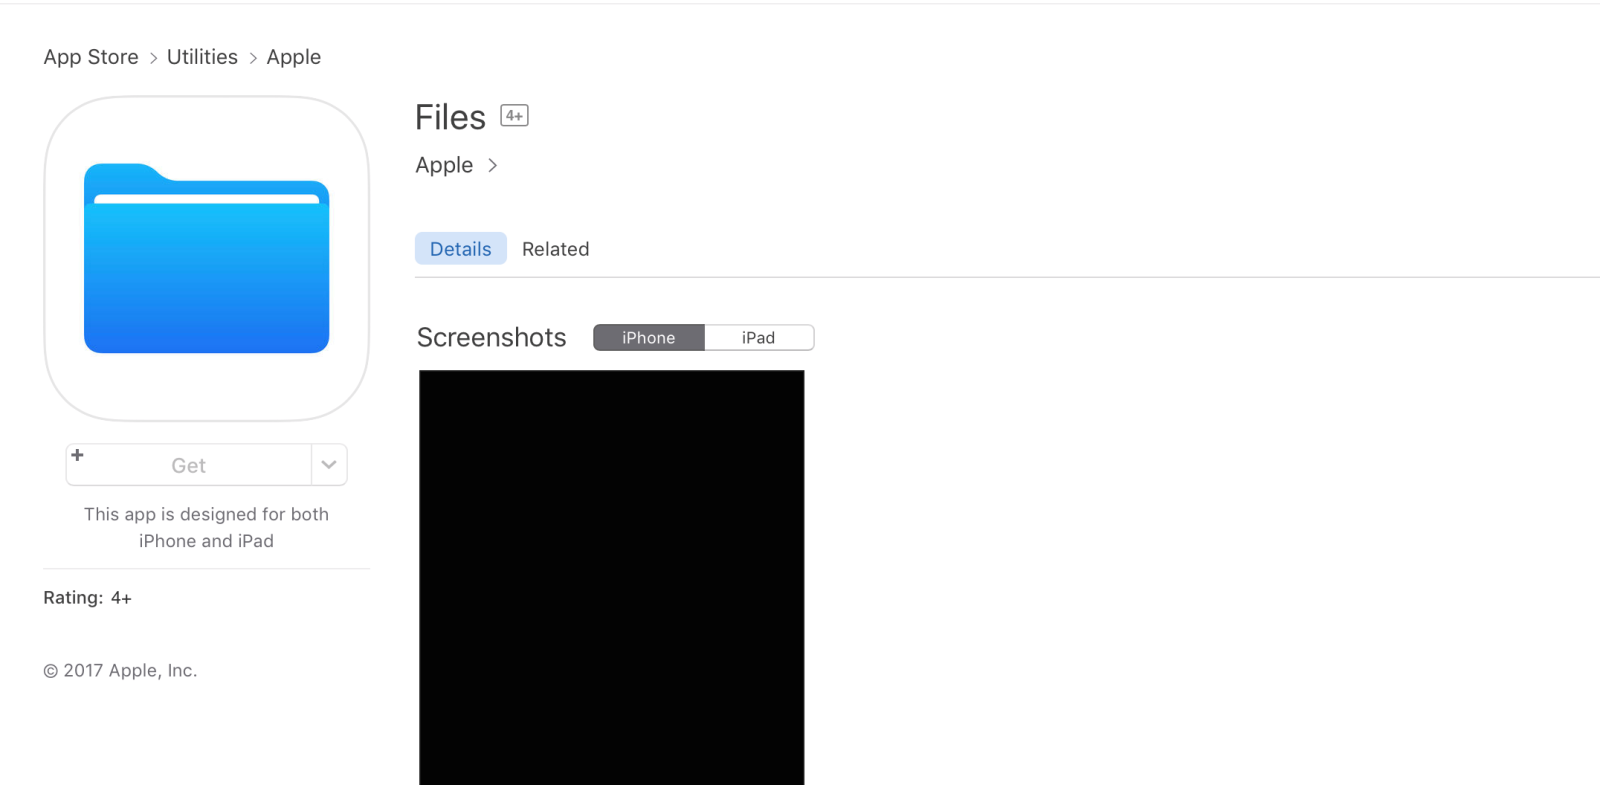 Ứng dụng “Files” bất ngờ xuất hiện trên App Store, Apple sẽ cho phép quản lý file kể từ iOS 11?